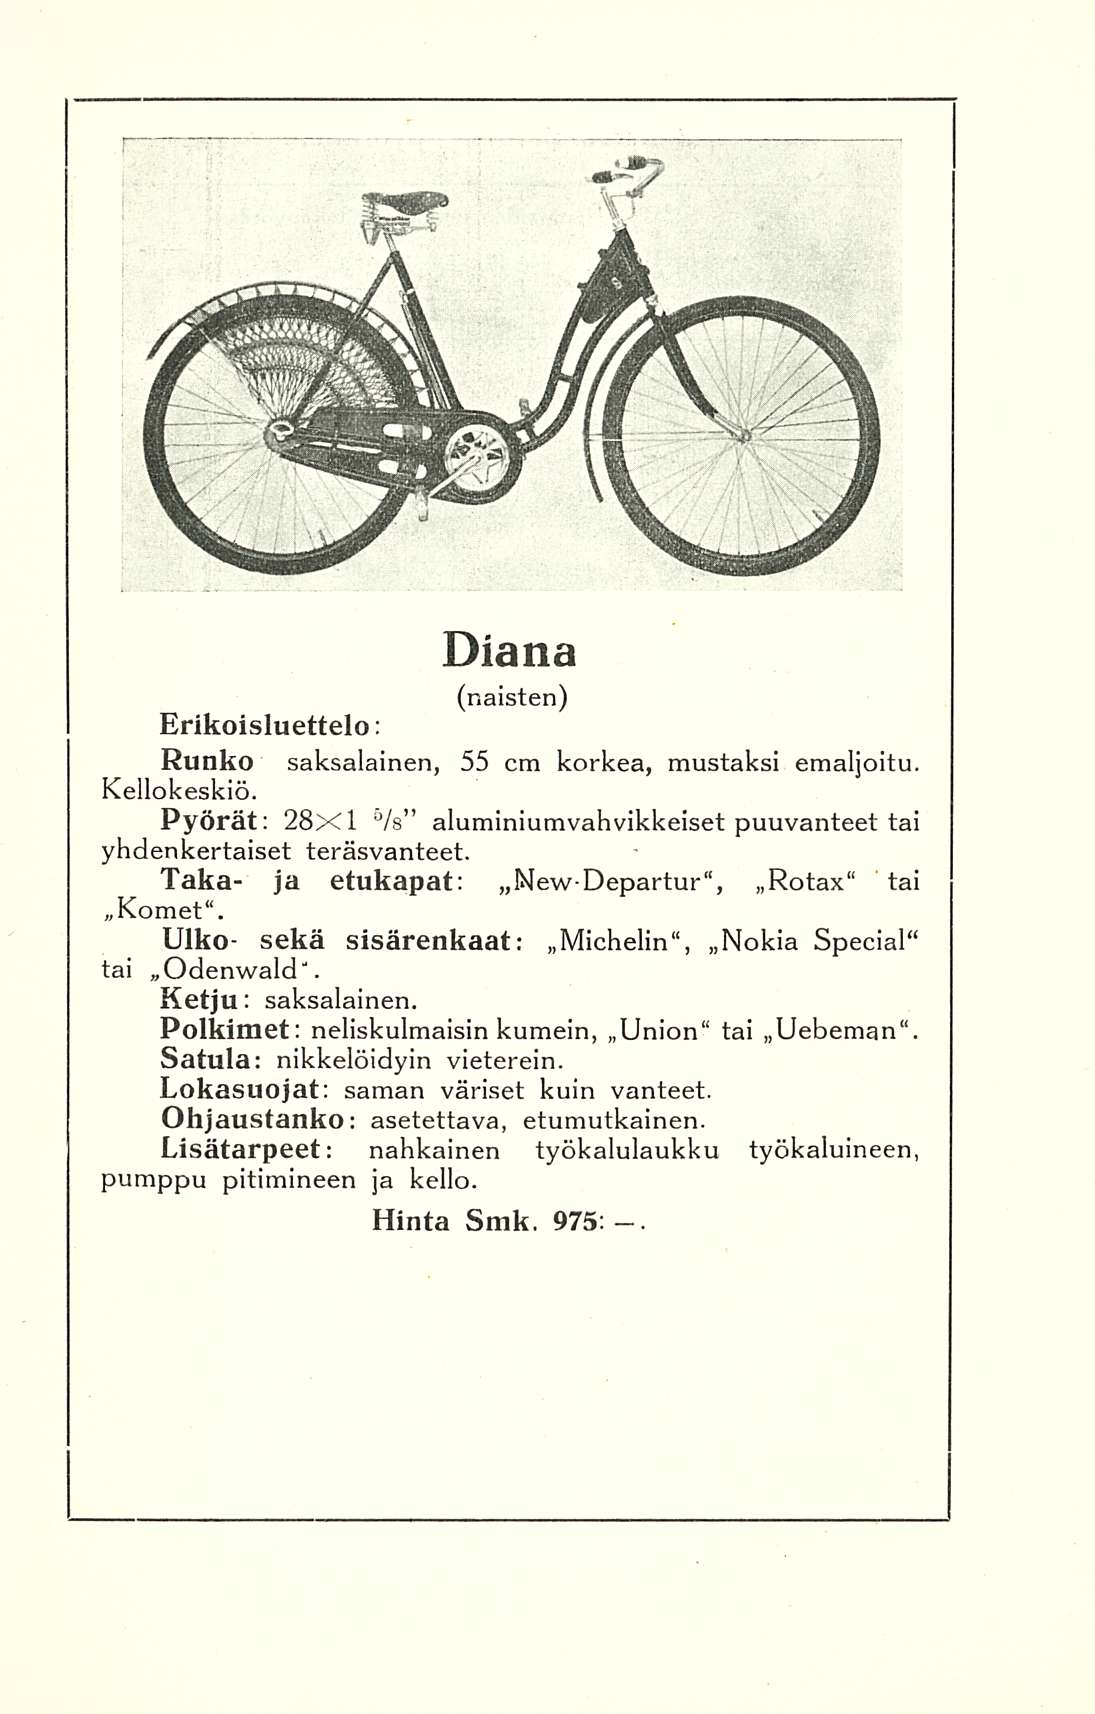 Diana (naisten) Erikoisluettelo: Runko saksalainen, 55 cm korkea, mustaksi emaljoitu. Kellokeskiö. Pyörät: 28x1 /s aluminiumvahvikkeiset puuvanteet tai yhdenkertaiset teräsvanteet.